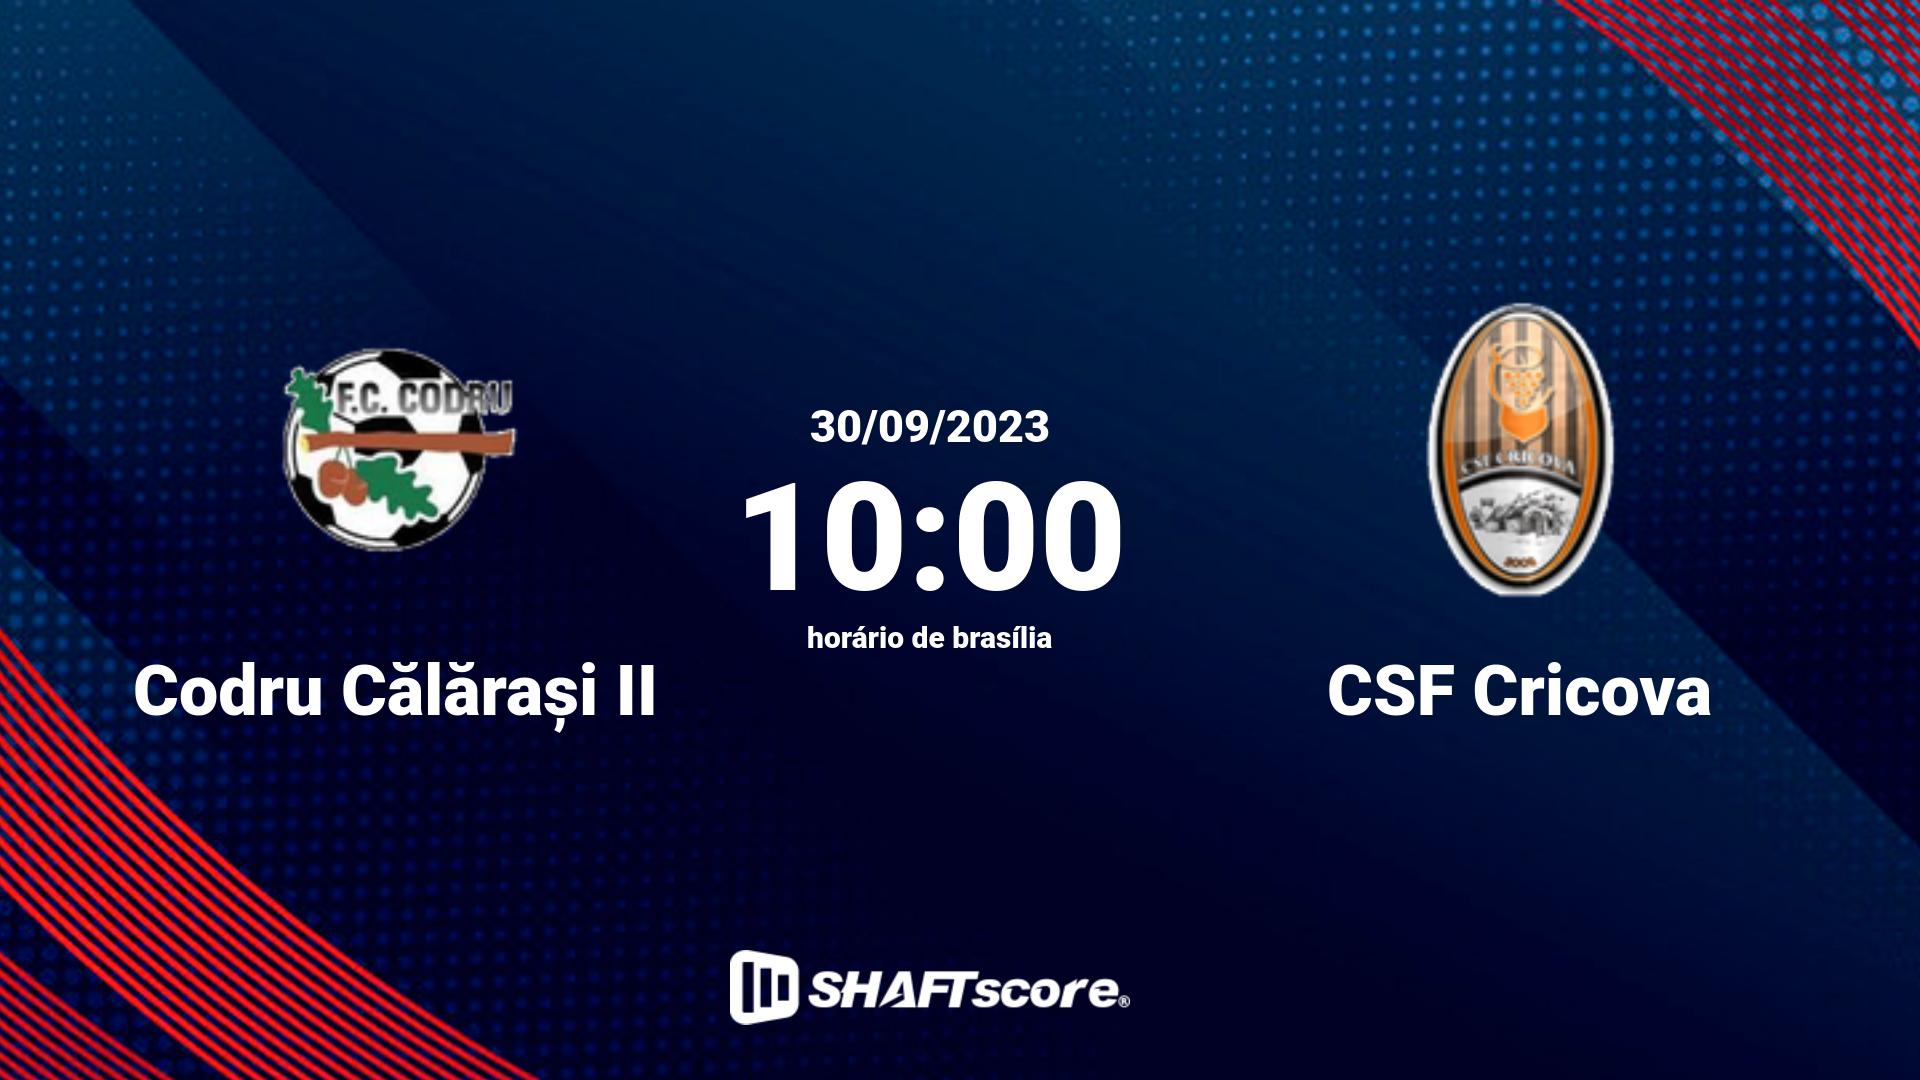 Estatísticas do jogo Codru Călărași II vs CSF Cricova 30.09 10:00